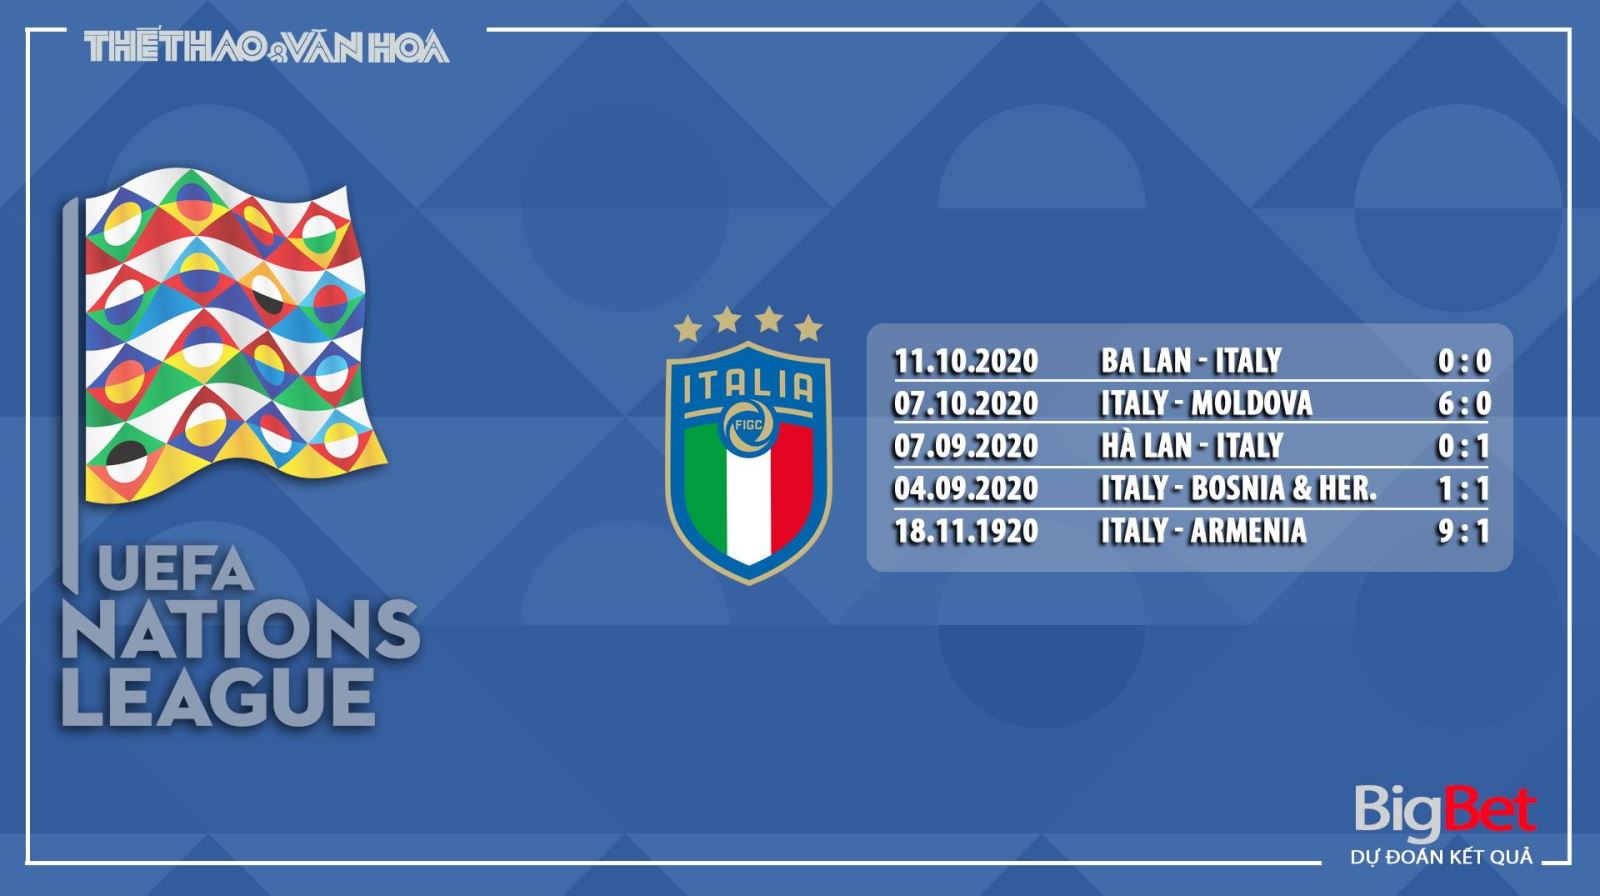 Italy vs Hà Lan, Italy, Hà Lan, trực tiếp Italy vs Hà Lan, so kèo Italy vs Hà Lan, nhận định Italy vs Hà Lan, kèo bóng đá Italy vs Hà Lan